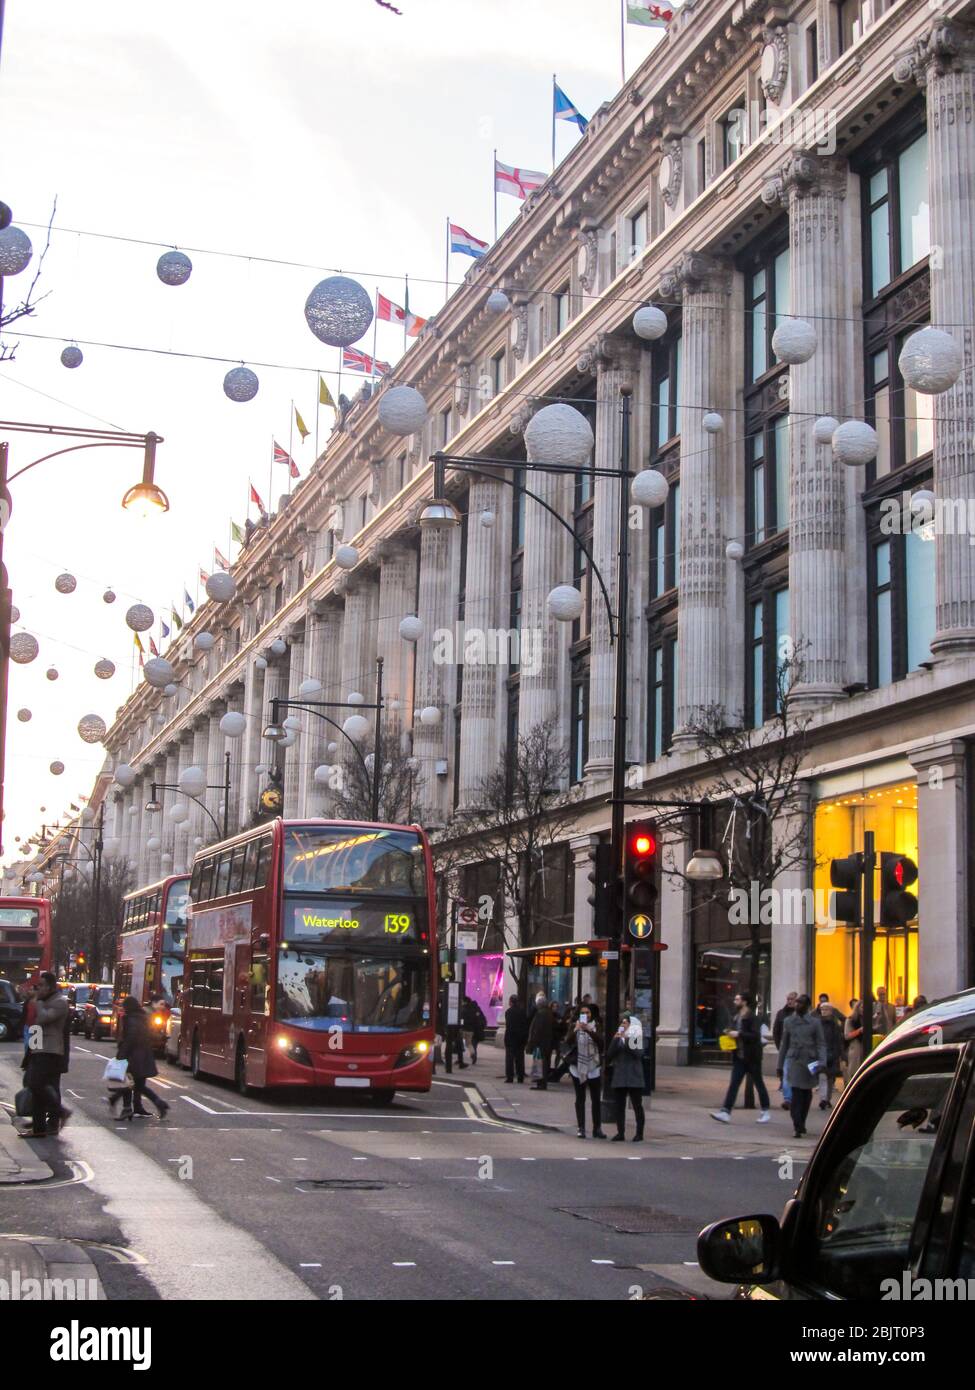 Bus à impériale rouges devant le magasin Selfridge Department d'Oxford Street, Londres, avec décorations de Noël étirées sur la rue Banque D'Images